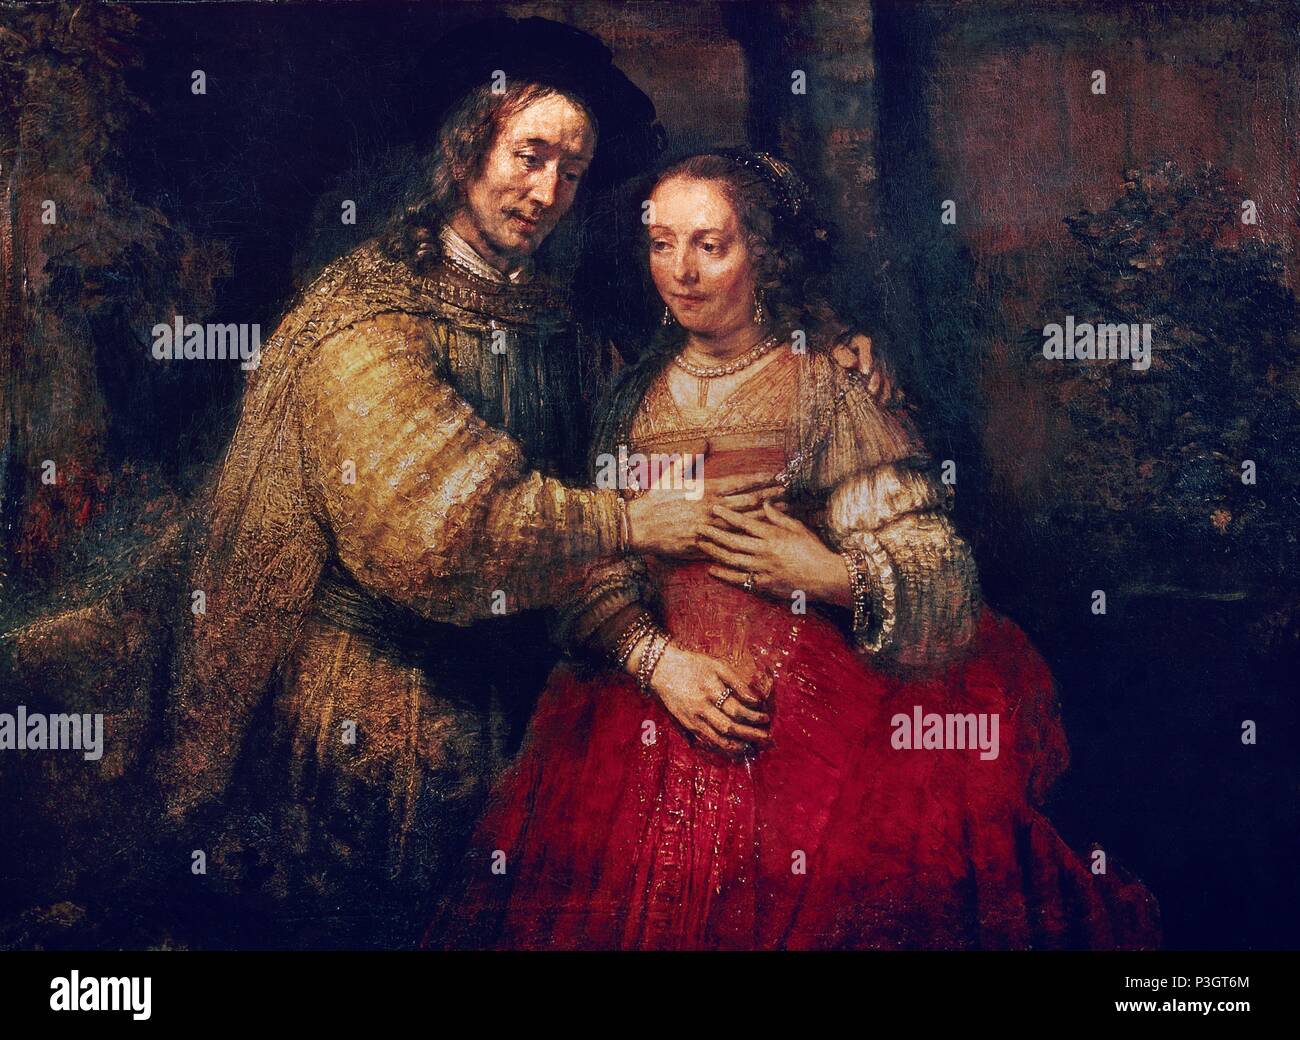 Scuola olandese. La Sposa ebrea. 1667. Olio su tela (121,5 x 166,5 cm). Amsterdam, Rijksmuseum. Autore: Rembrandt (1606-1669). Posizione: Rijksmuseum, Amsterdam, Olanda. Foto Stock